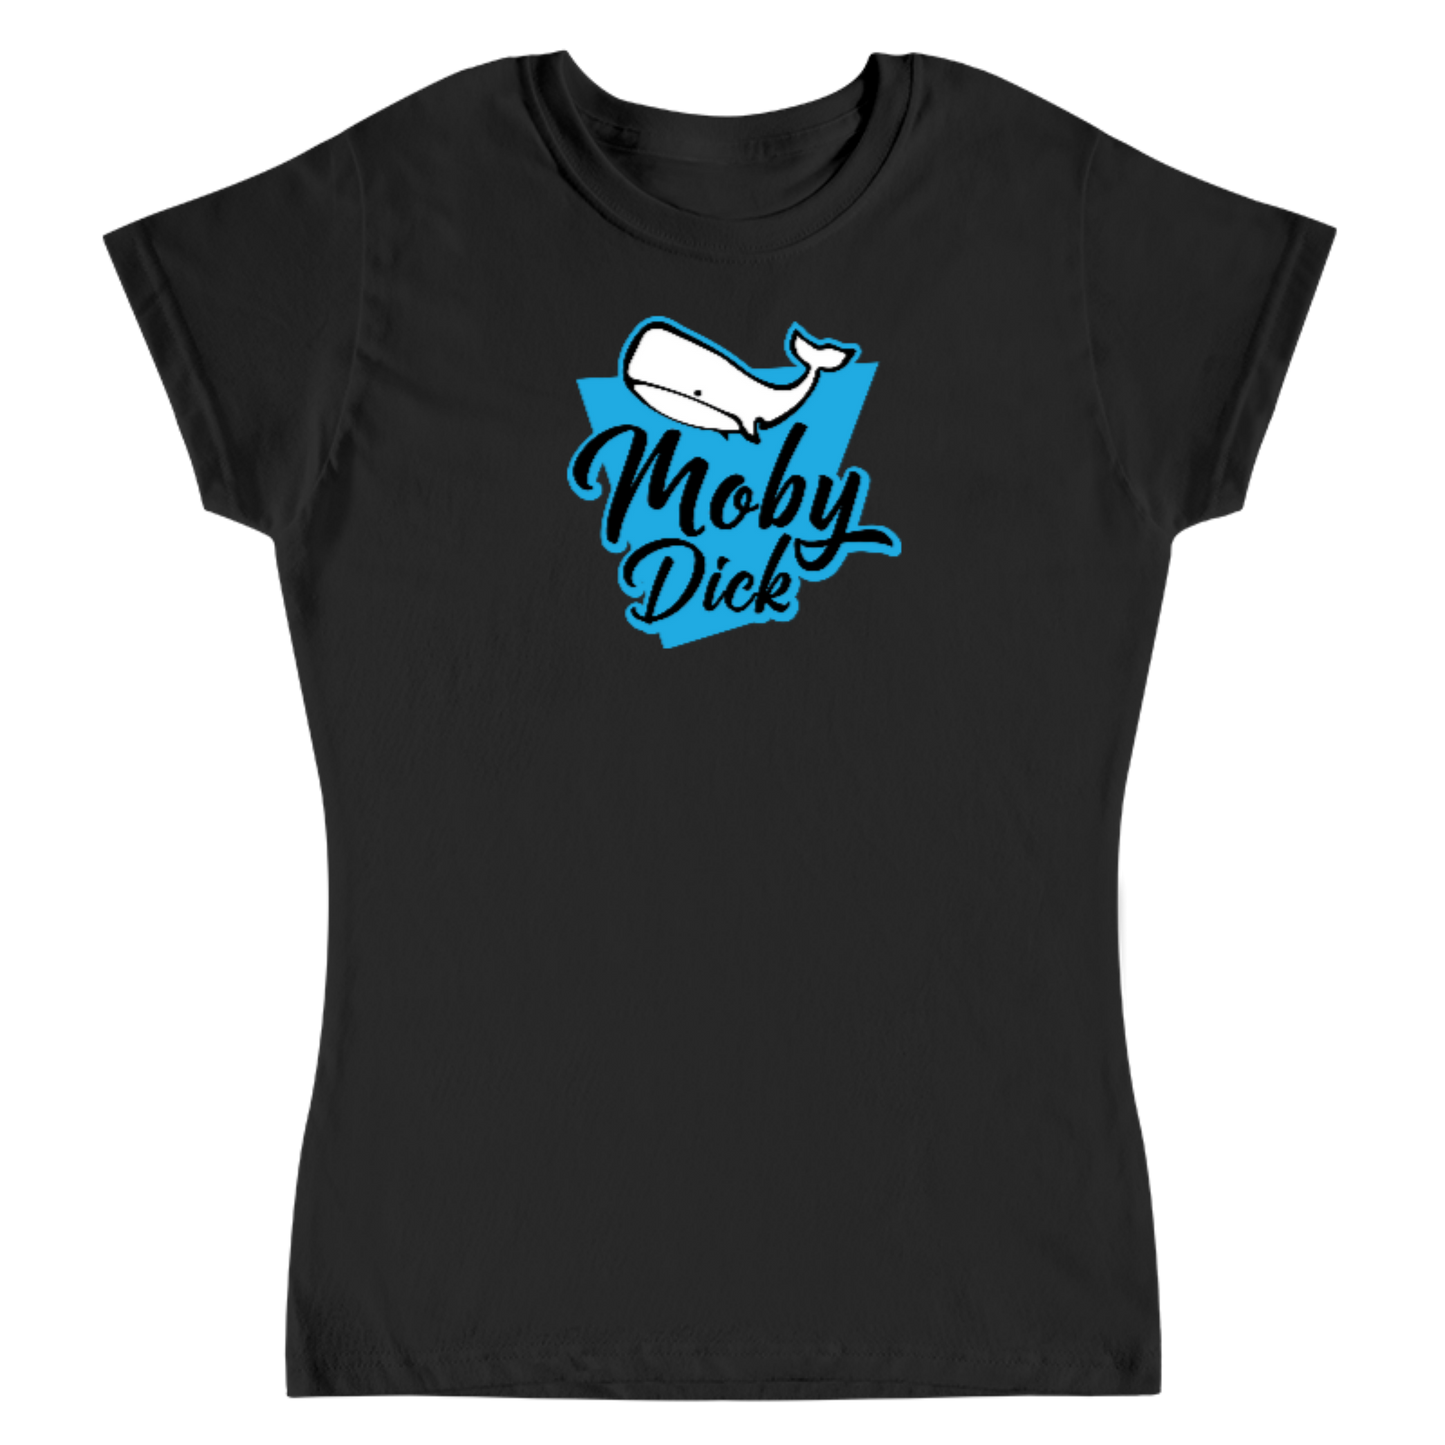 Moby Dick 3 WOMEN Camiseta